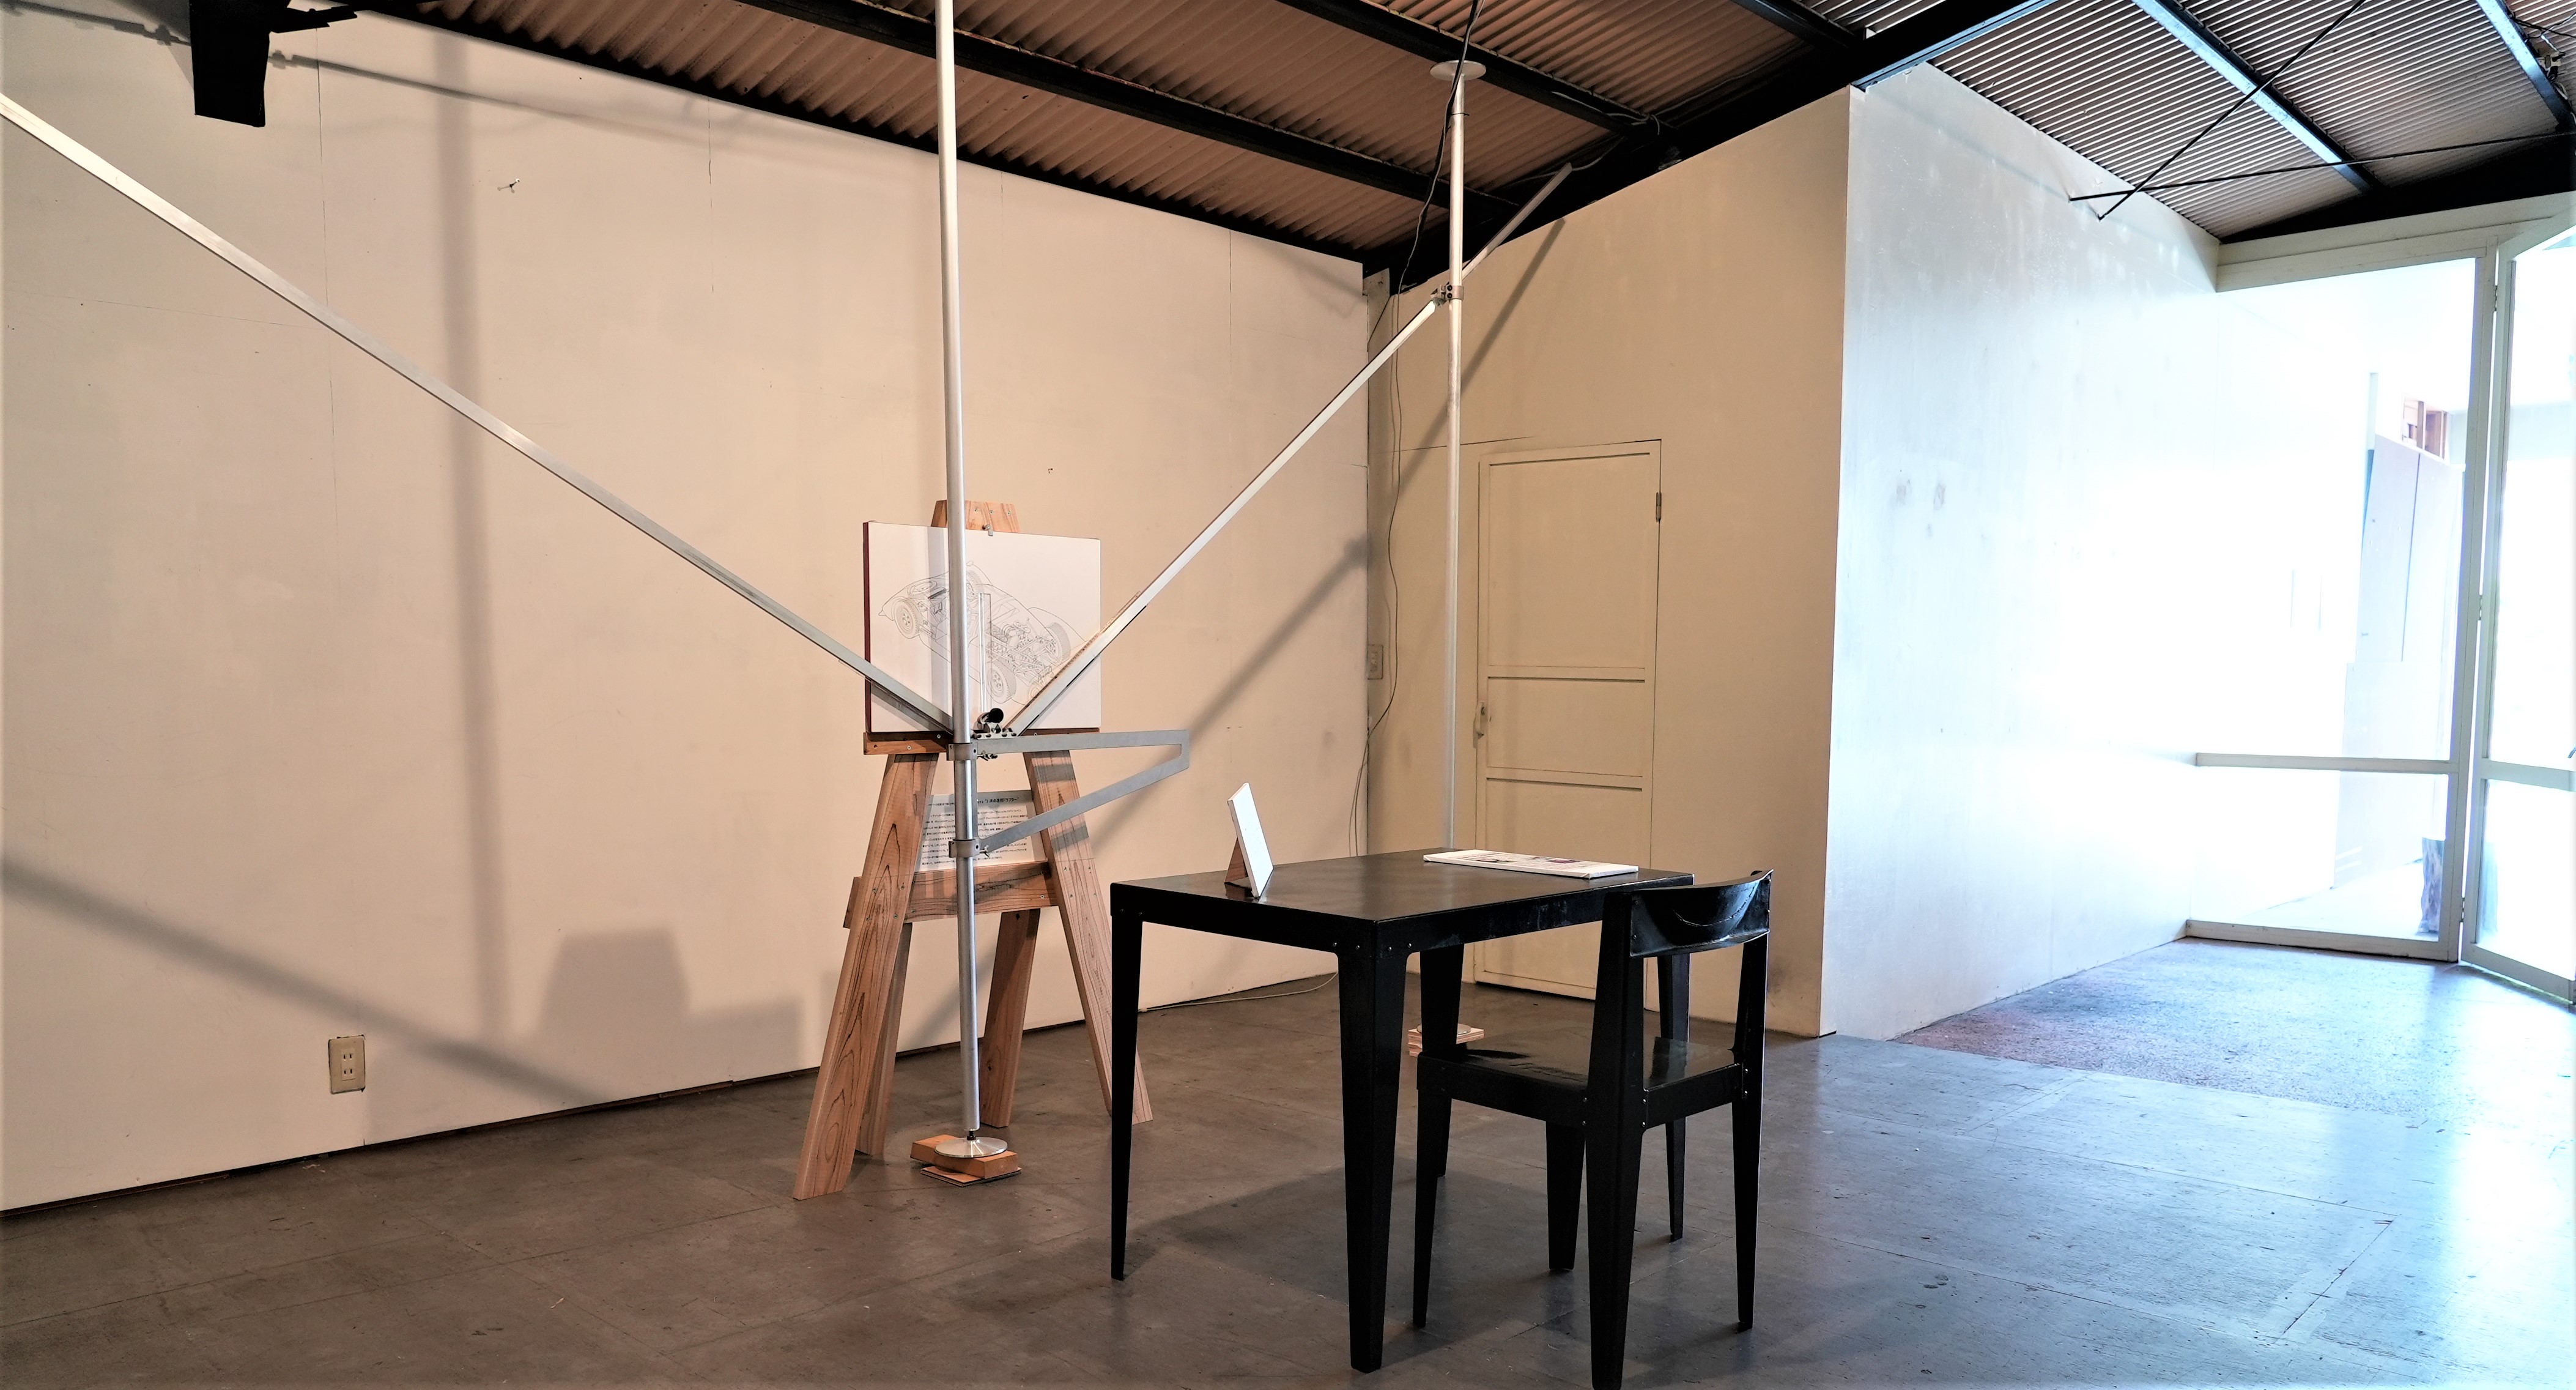 「パースペクティヴ・ドロワー」と「軽量な家具」　光を求めて『Art View４ Hamamatsu』 1 day Acttion Event 開催まとめ・ギャラリー ケイブ